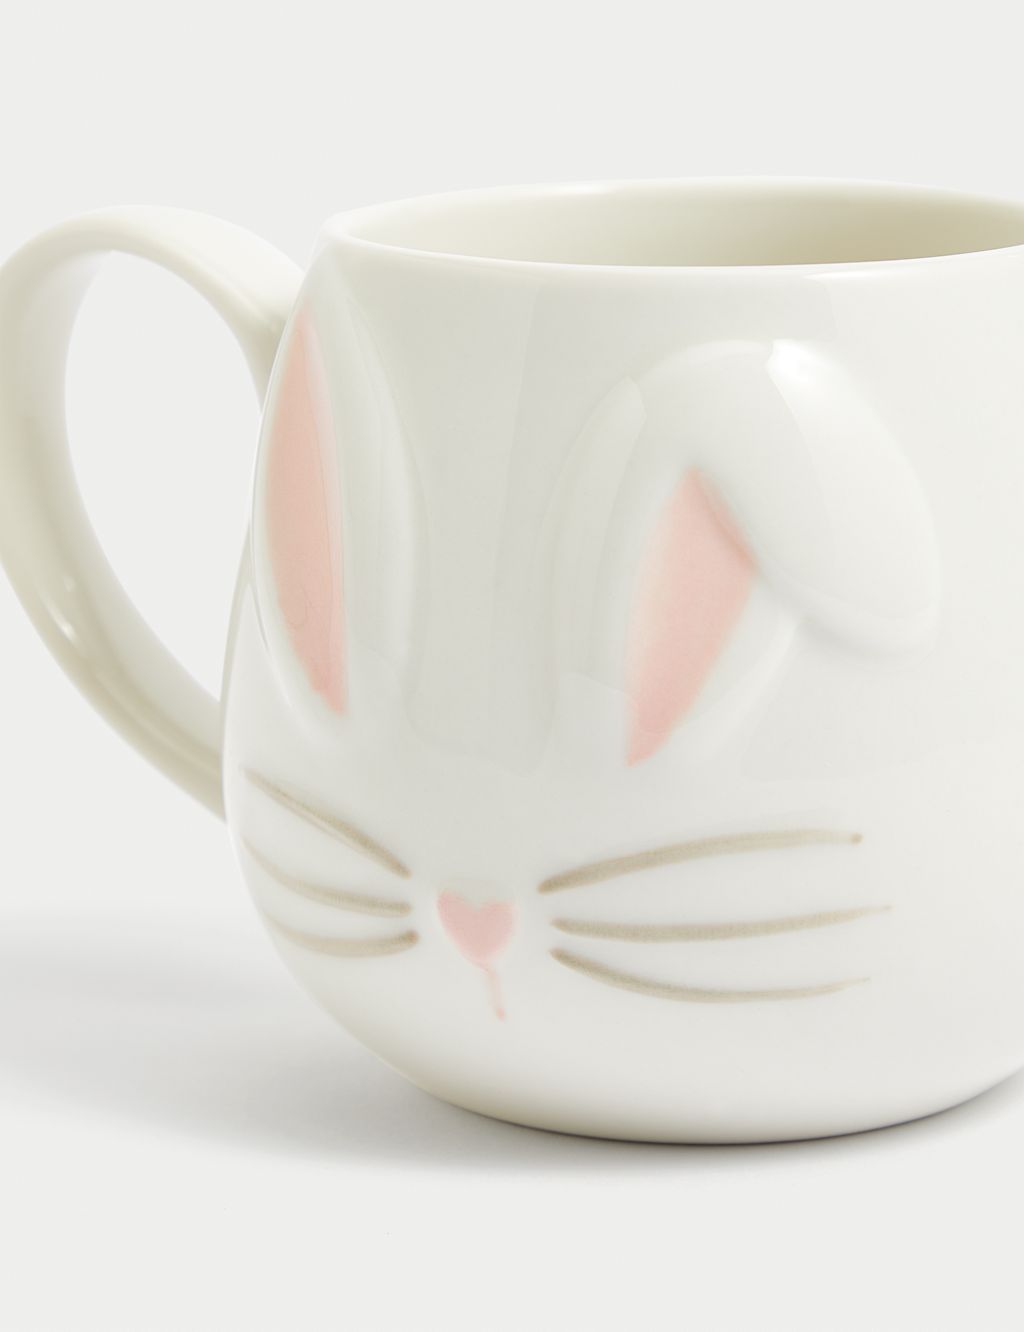 Bunny Mug 1 of 3